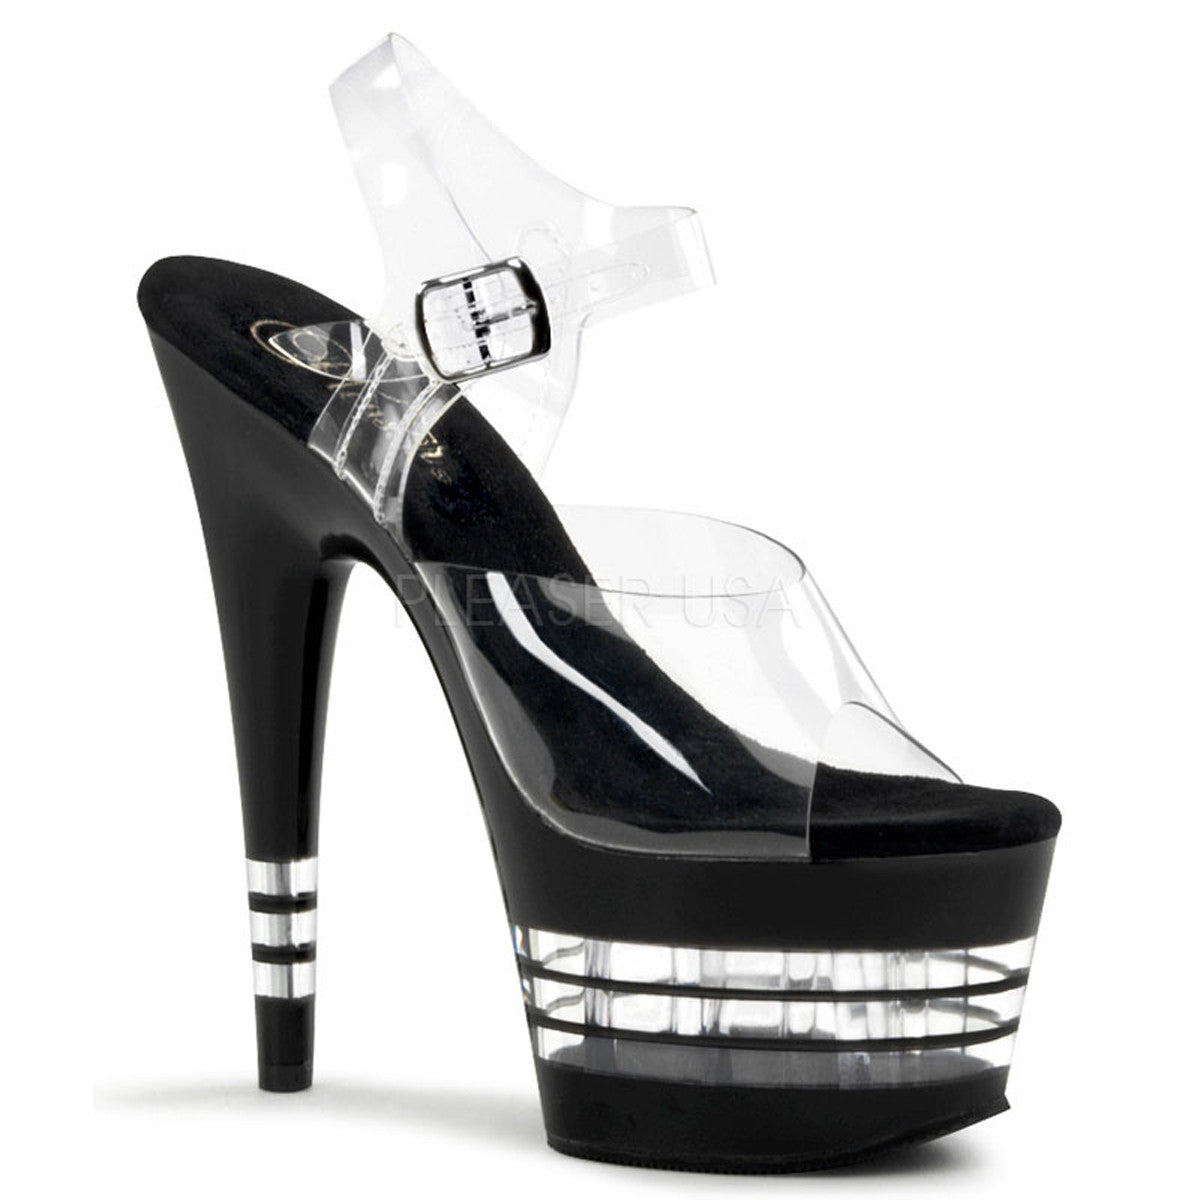 PLEASER ADORE-708LN Clear-Black Ankle Strap Sandals - Shoecup.com - 1